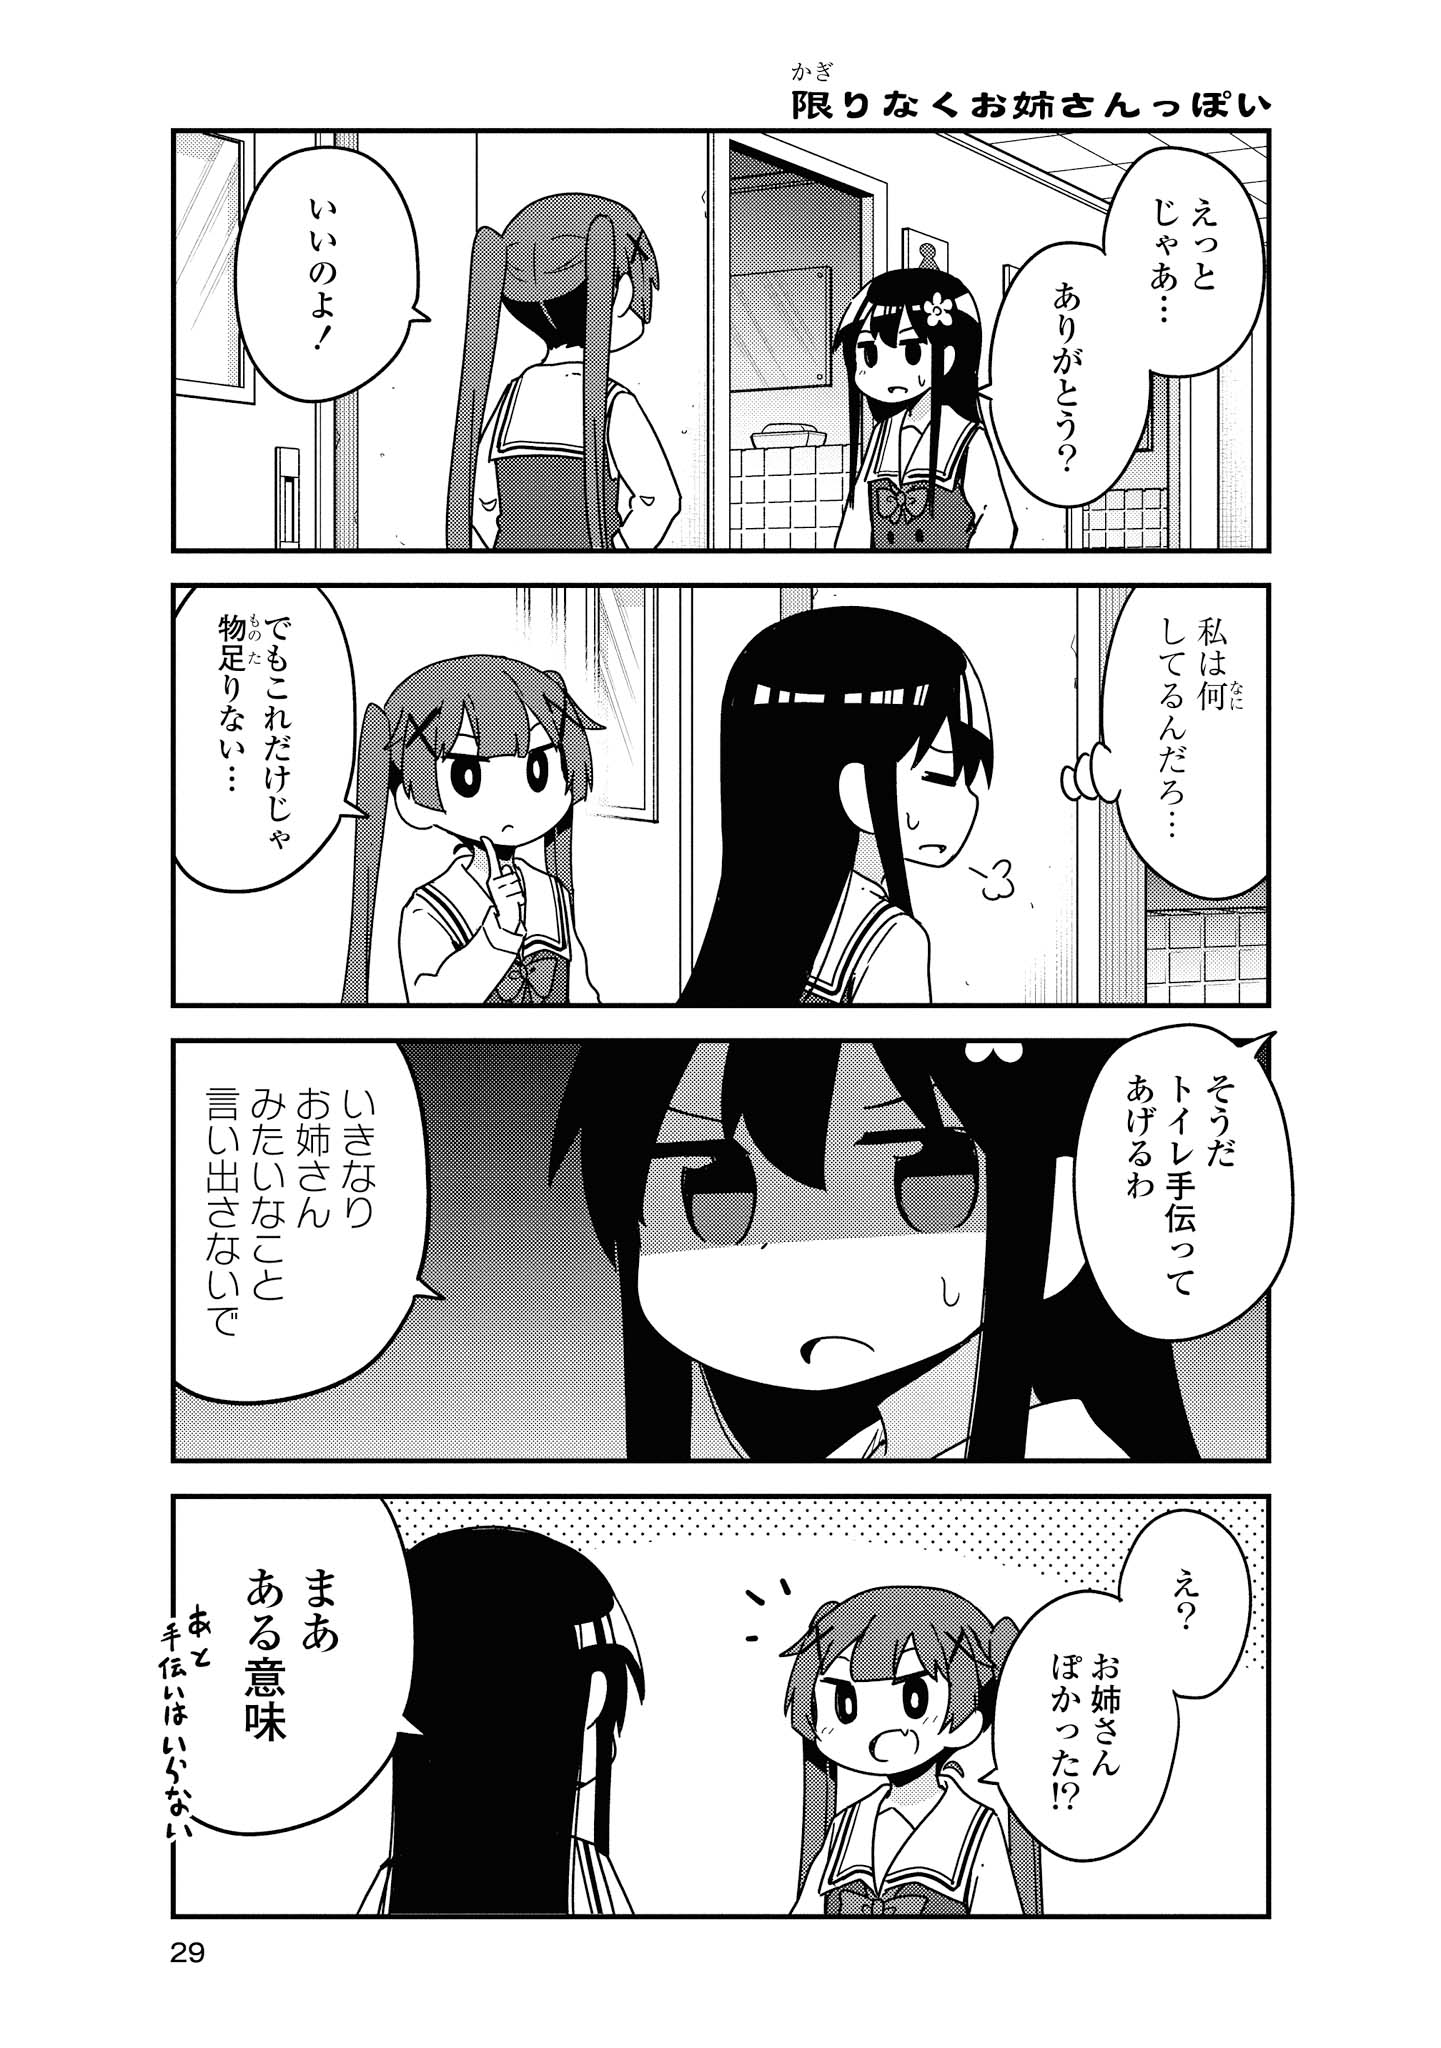 Watashi ni Tenshi ga Maiorita! - Chapter 53 - Page 5